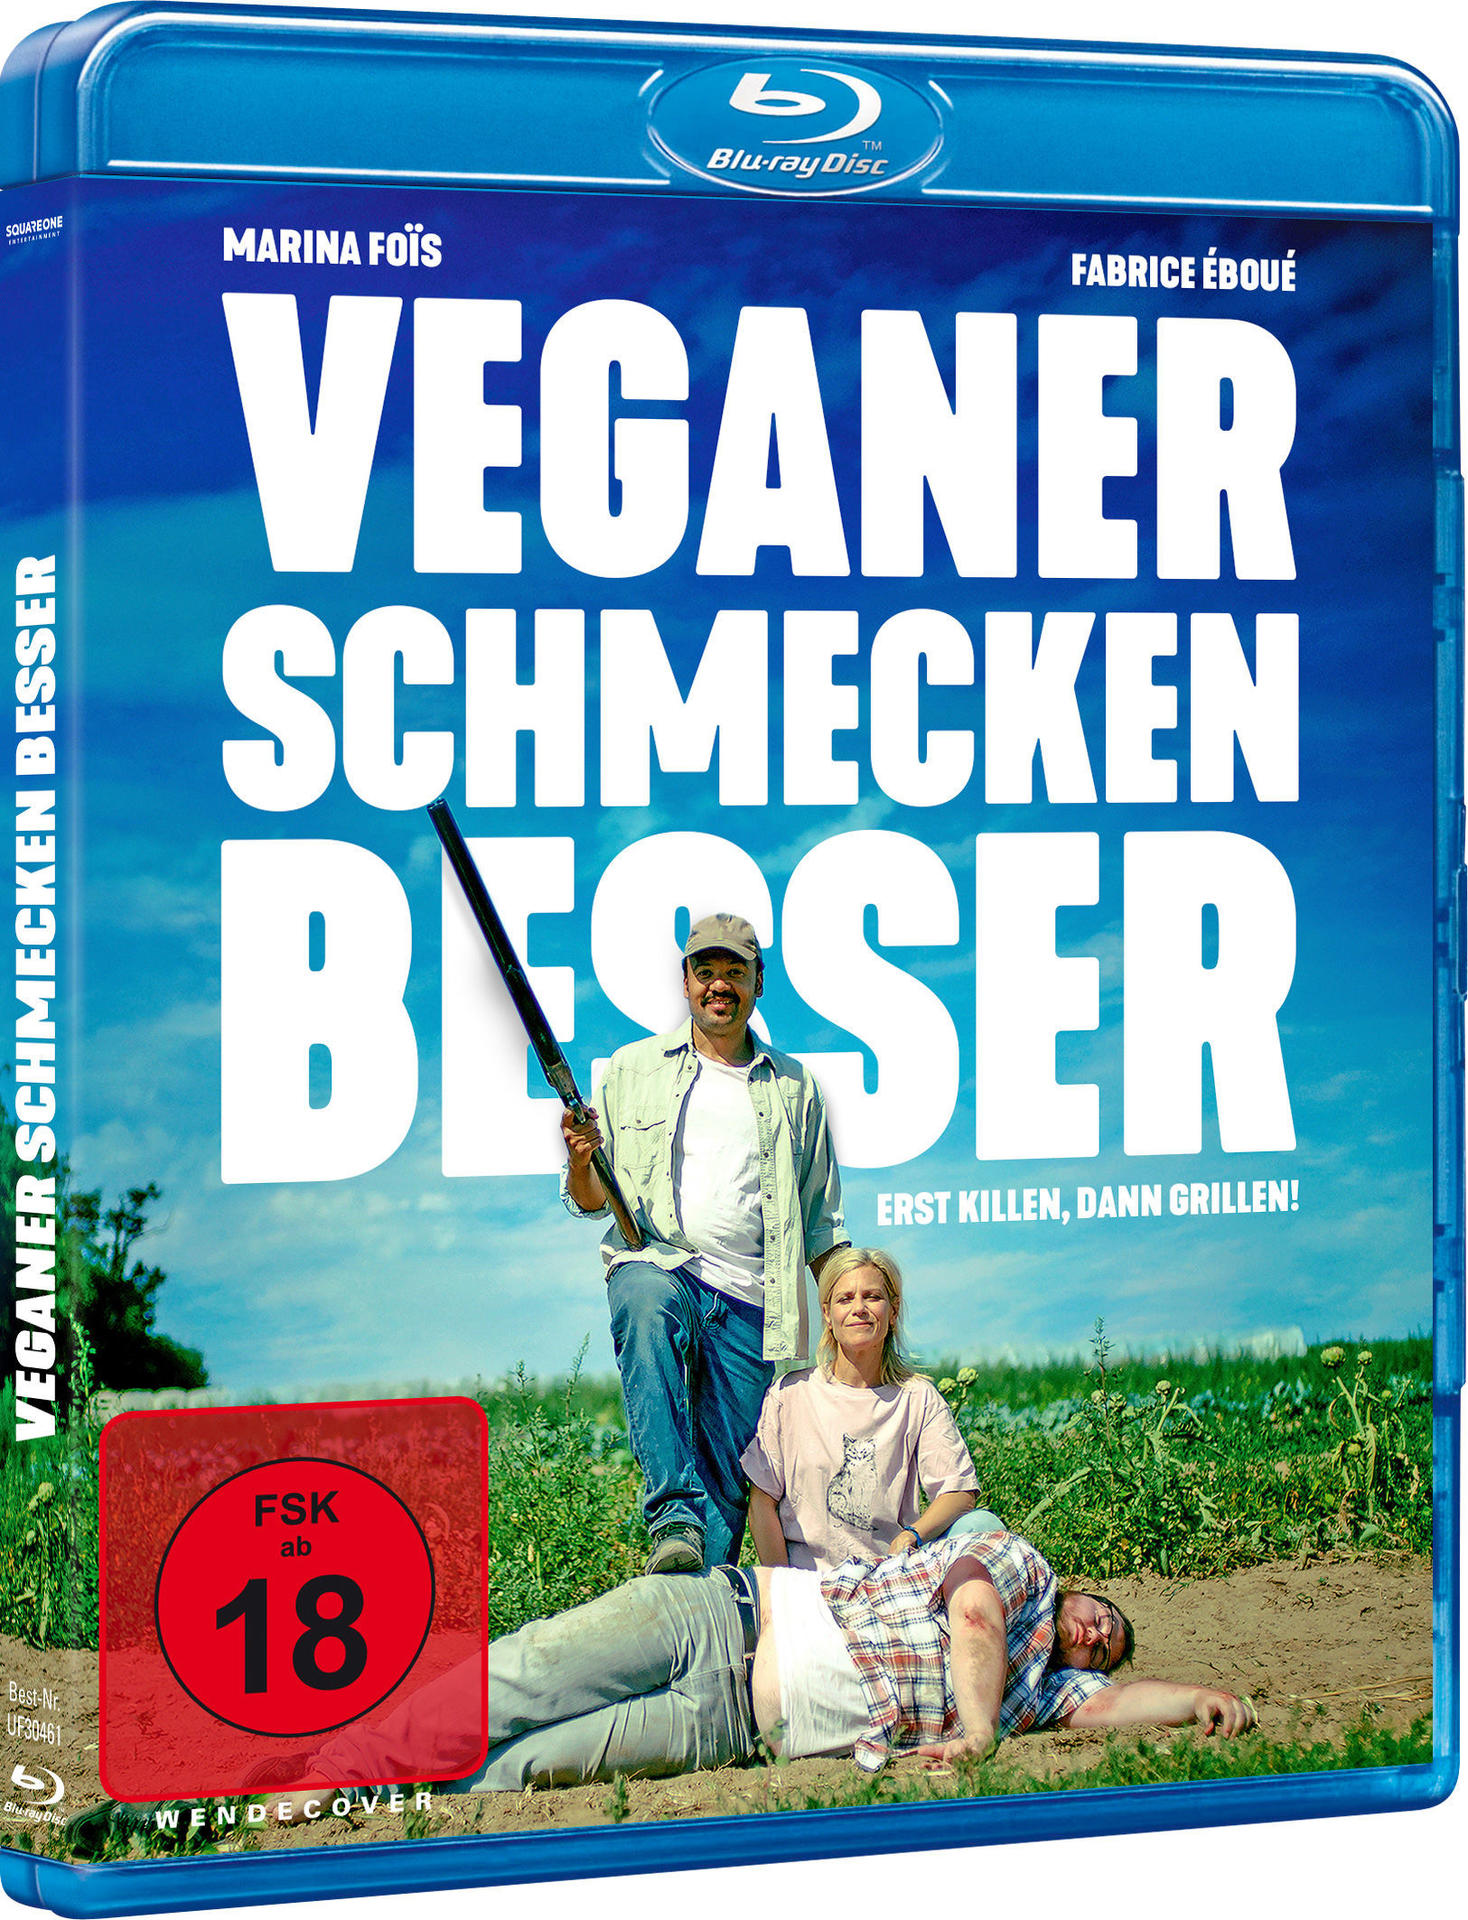 Killen, Dann Veganer Erst Blu-ray besser schmecken Grillen! -